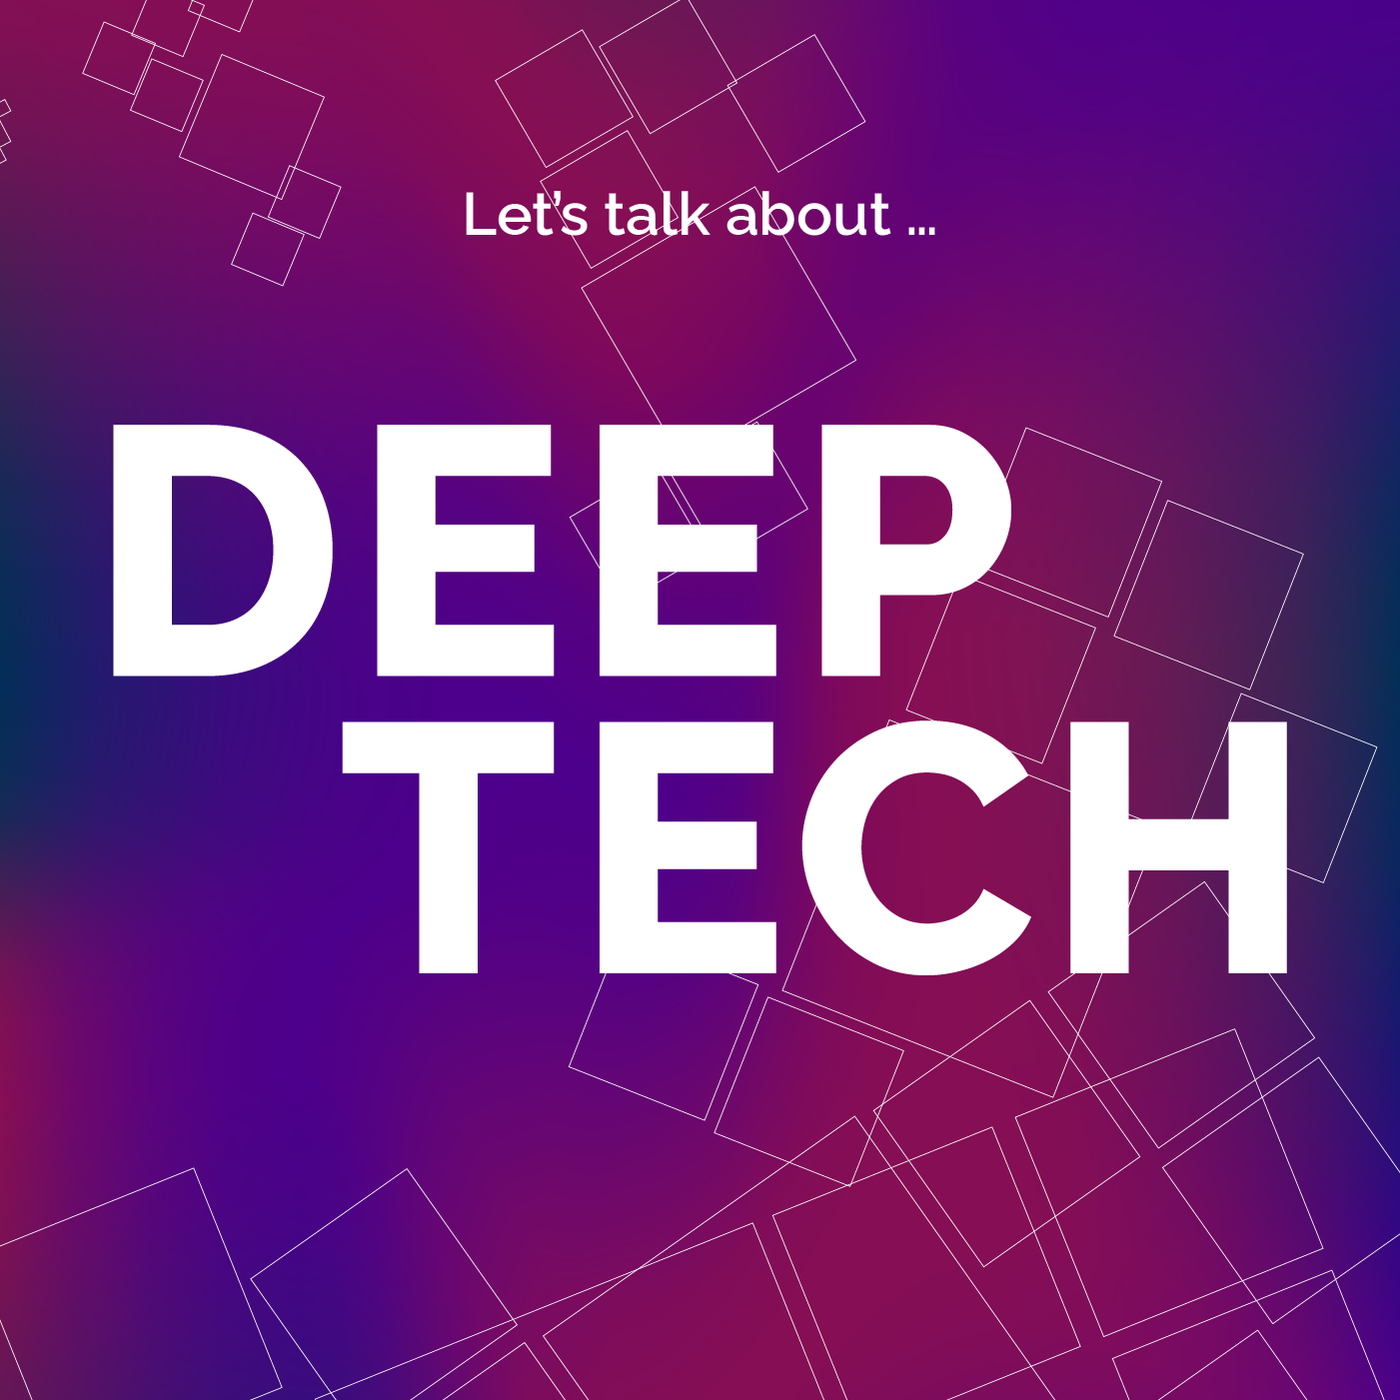 Let’s talk about (Deep) Tech!